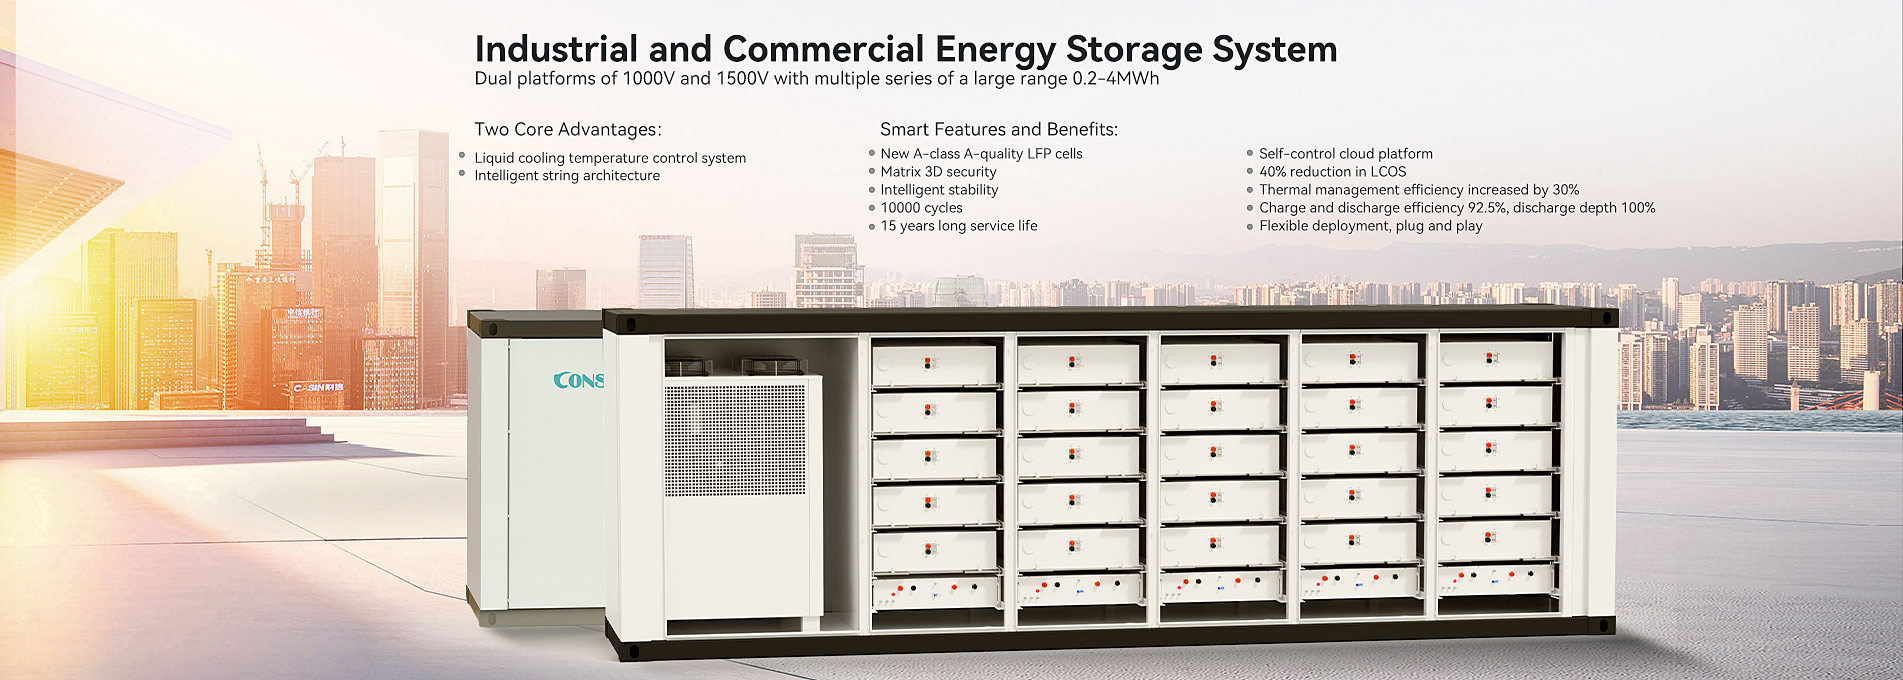 Sistema de almacenamiento de energía industrial y comercial.